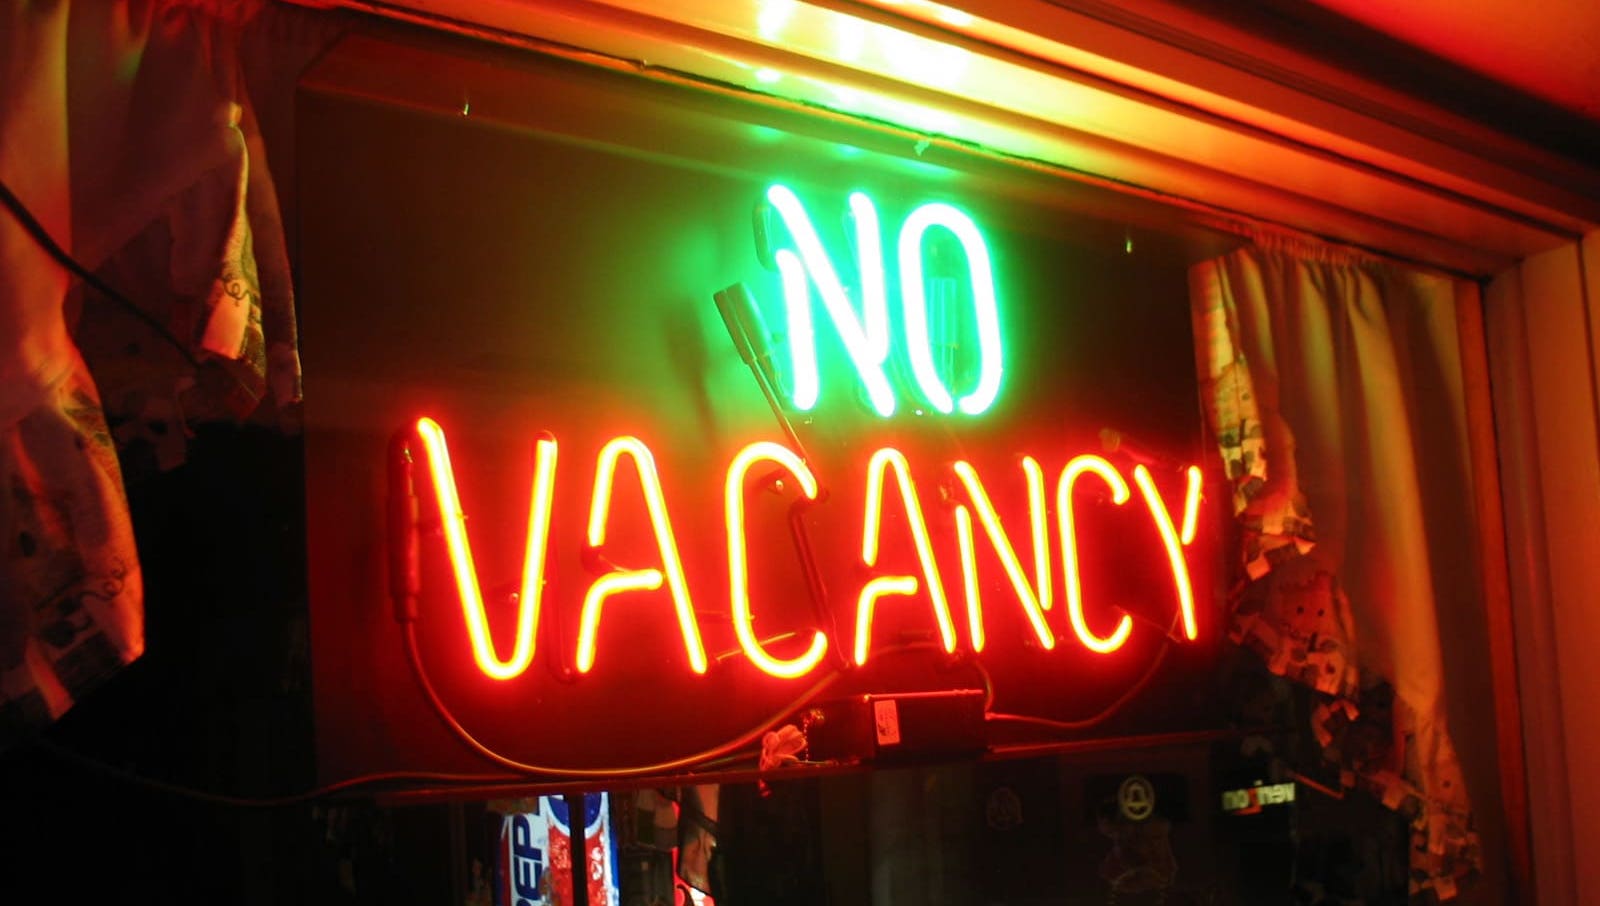 No rental Vacancies sign